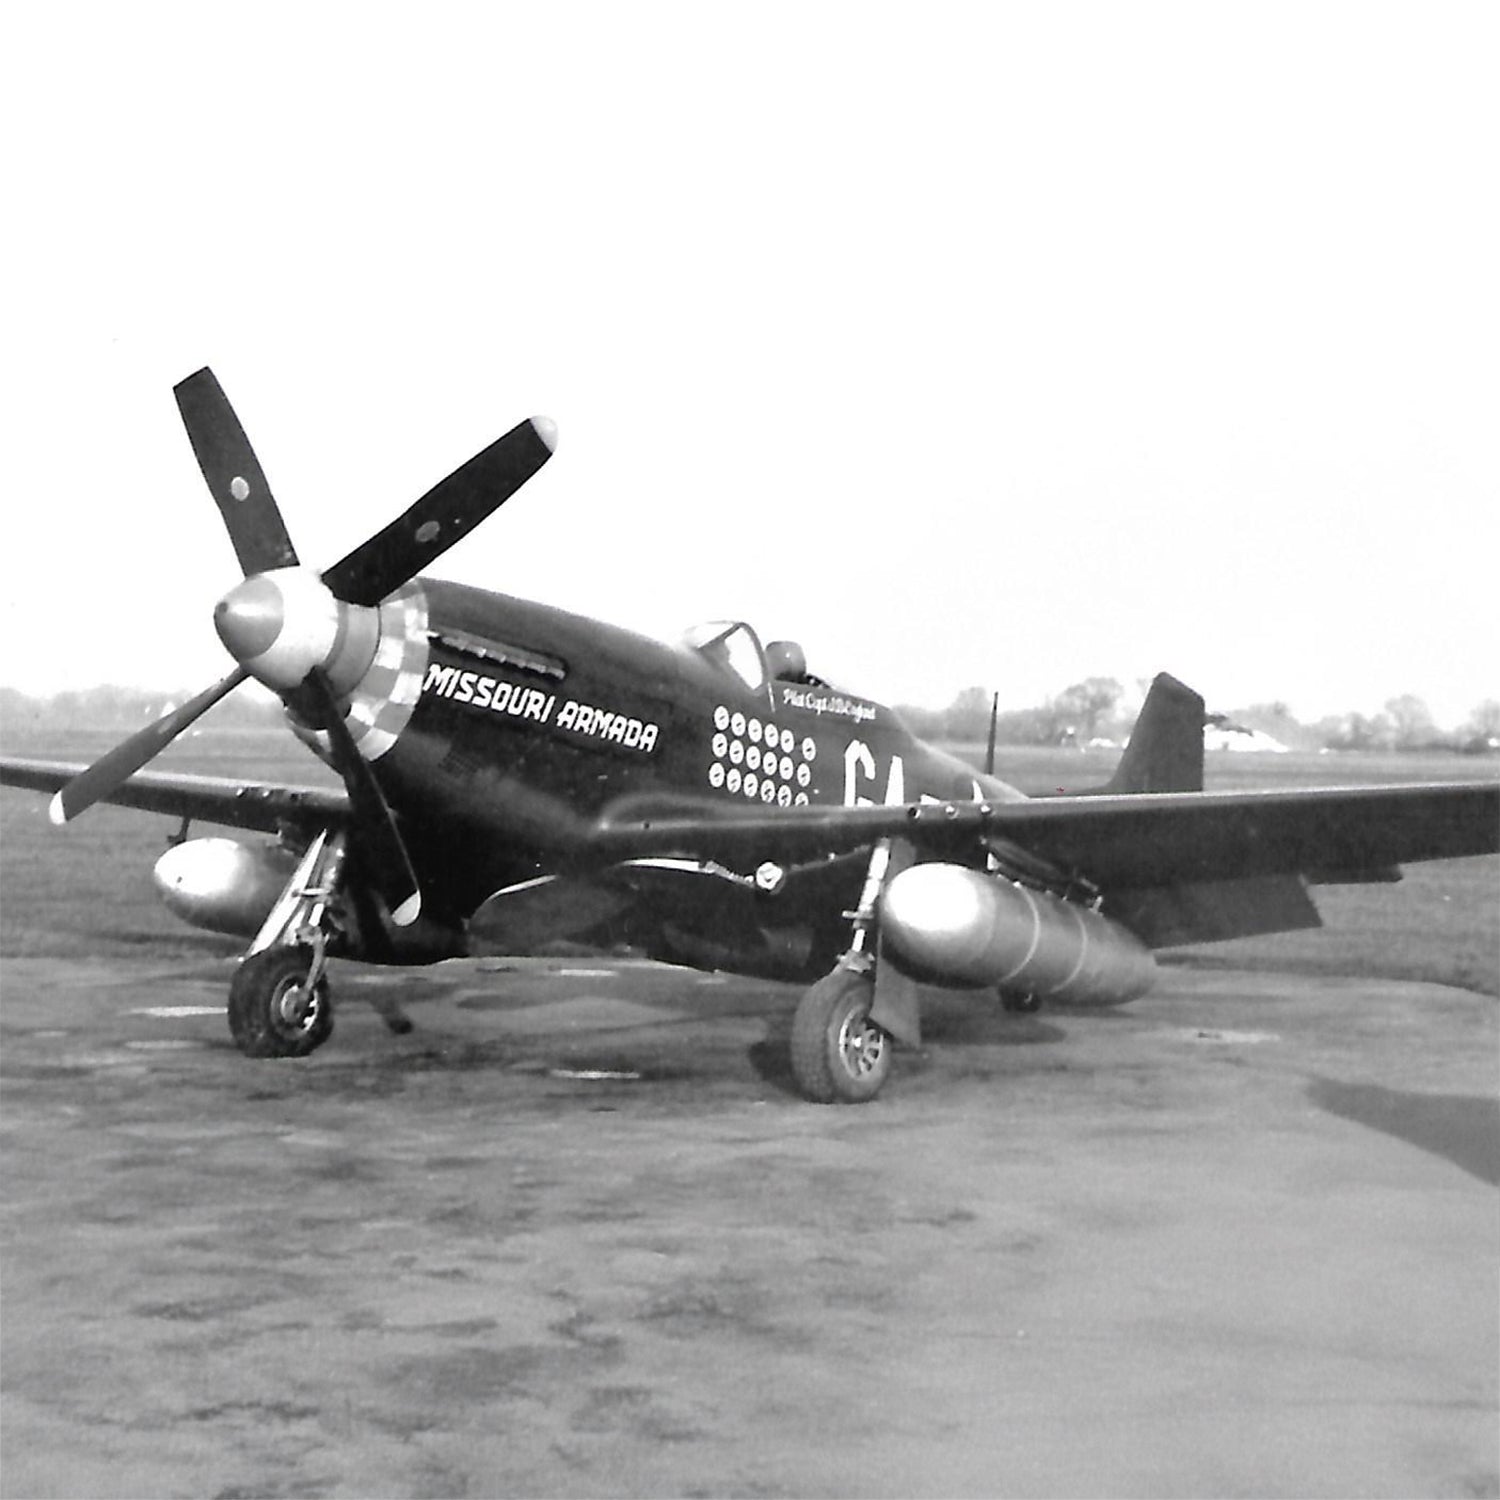 P-51 "Missouri Armada" Low Top Canvas Shoes - I Love a Hangar